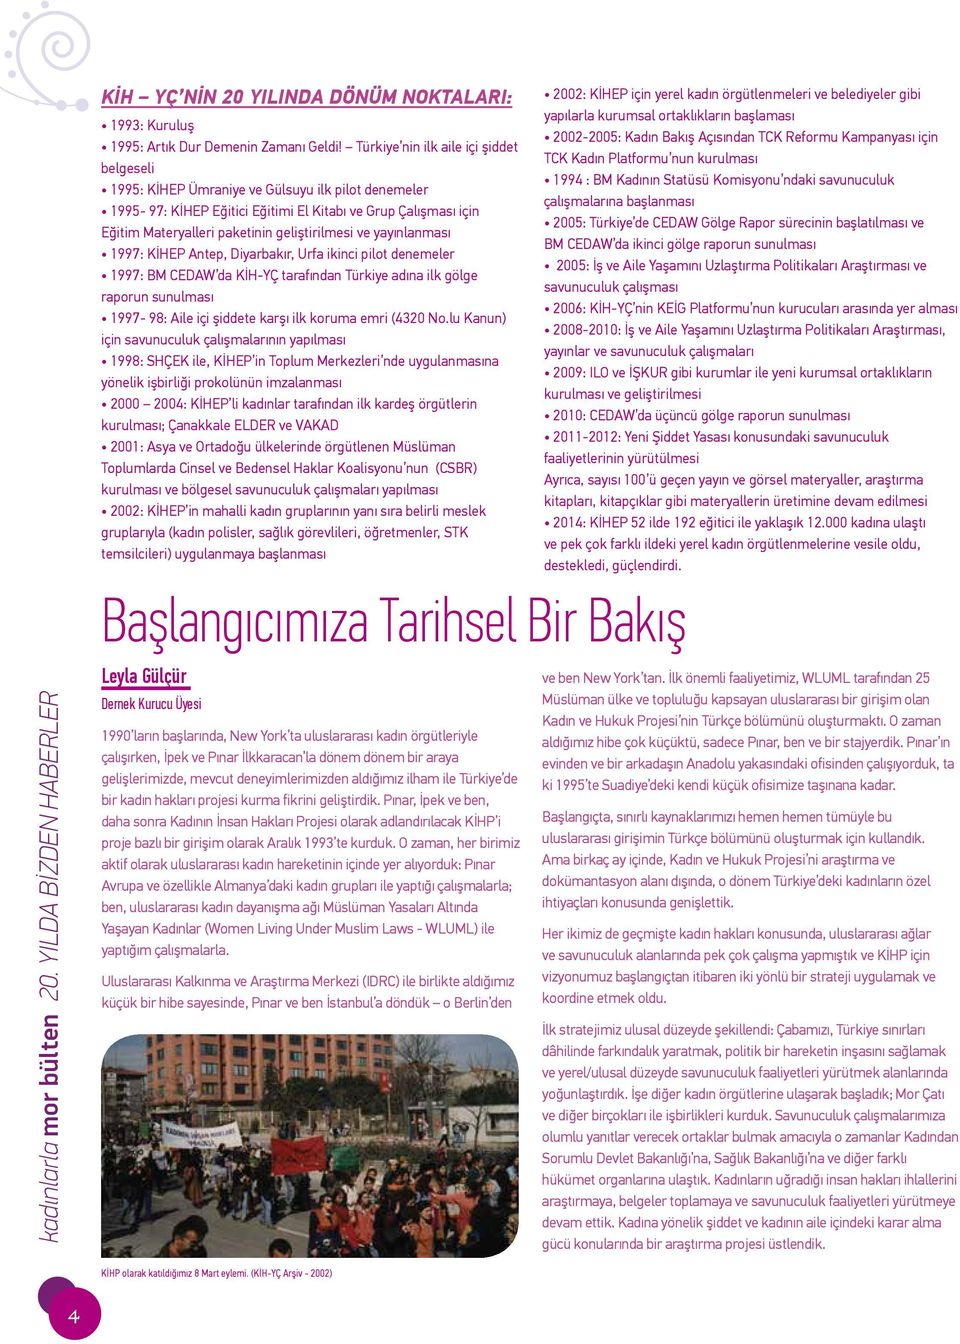 geliştirilmesi ve yayınlanması 1997: KİHEP Antep, Diyarbakır, Urfa ikinci pilot denemeler 1997: BM CEDAW da KİH-YÇ tarafından Türkiye adına ilk gölge raporun sunulması 1997-98: Aile içi şiddete karşı